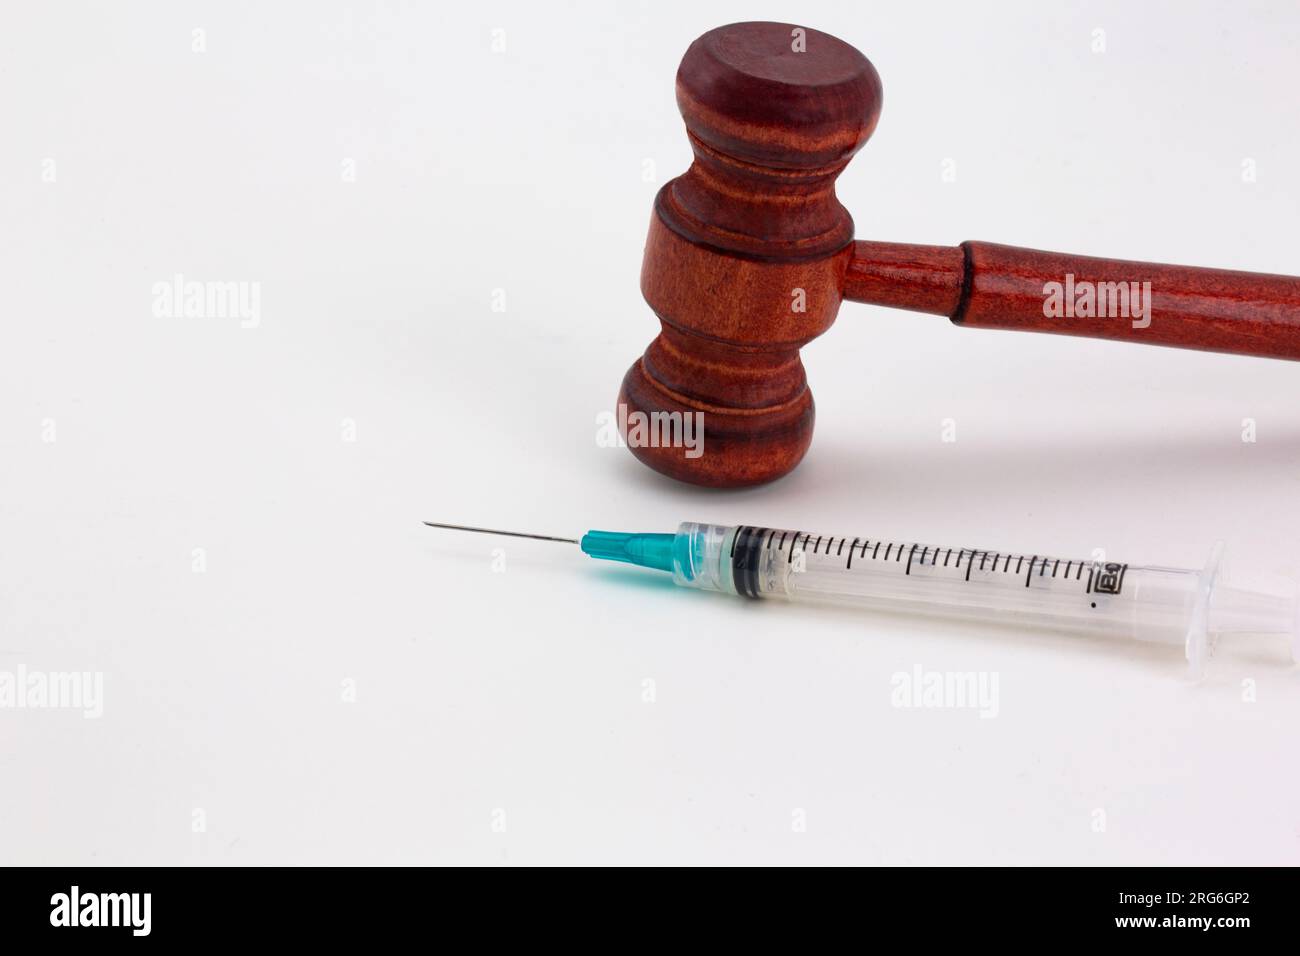 Hammer und Spritze auf weißem Hintergrund deuten auf konzeptionelle Verbindungen von medizinischen und rechtlichen Fragen hin Stockfoto